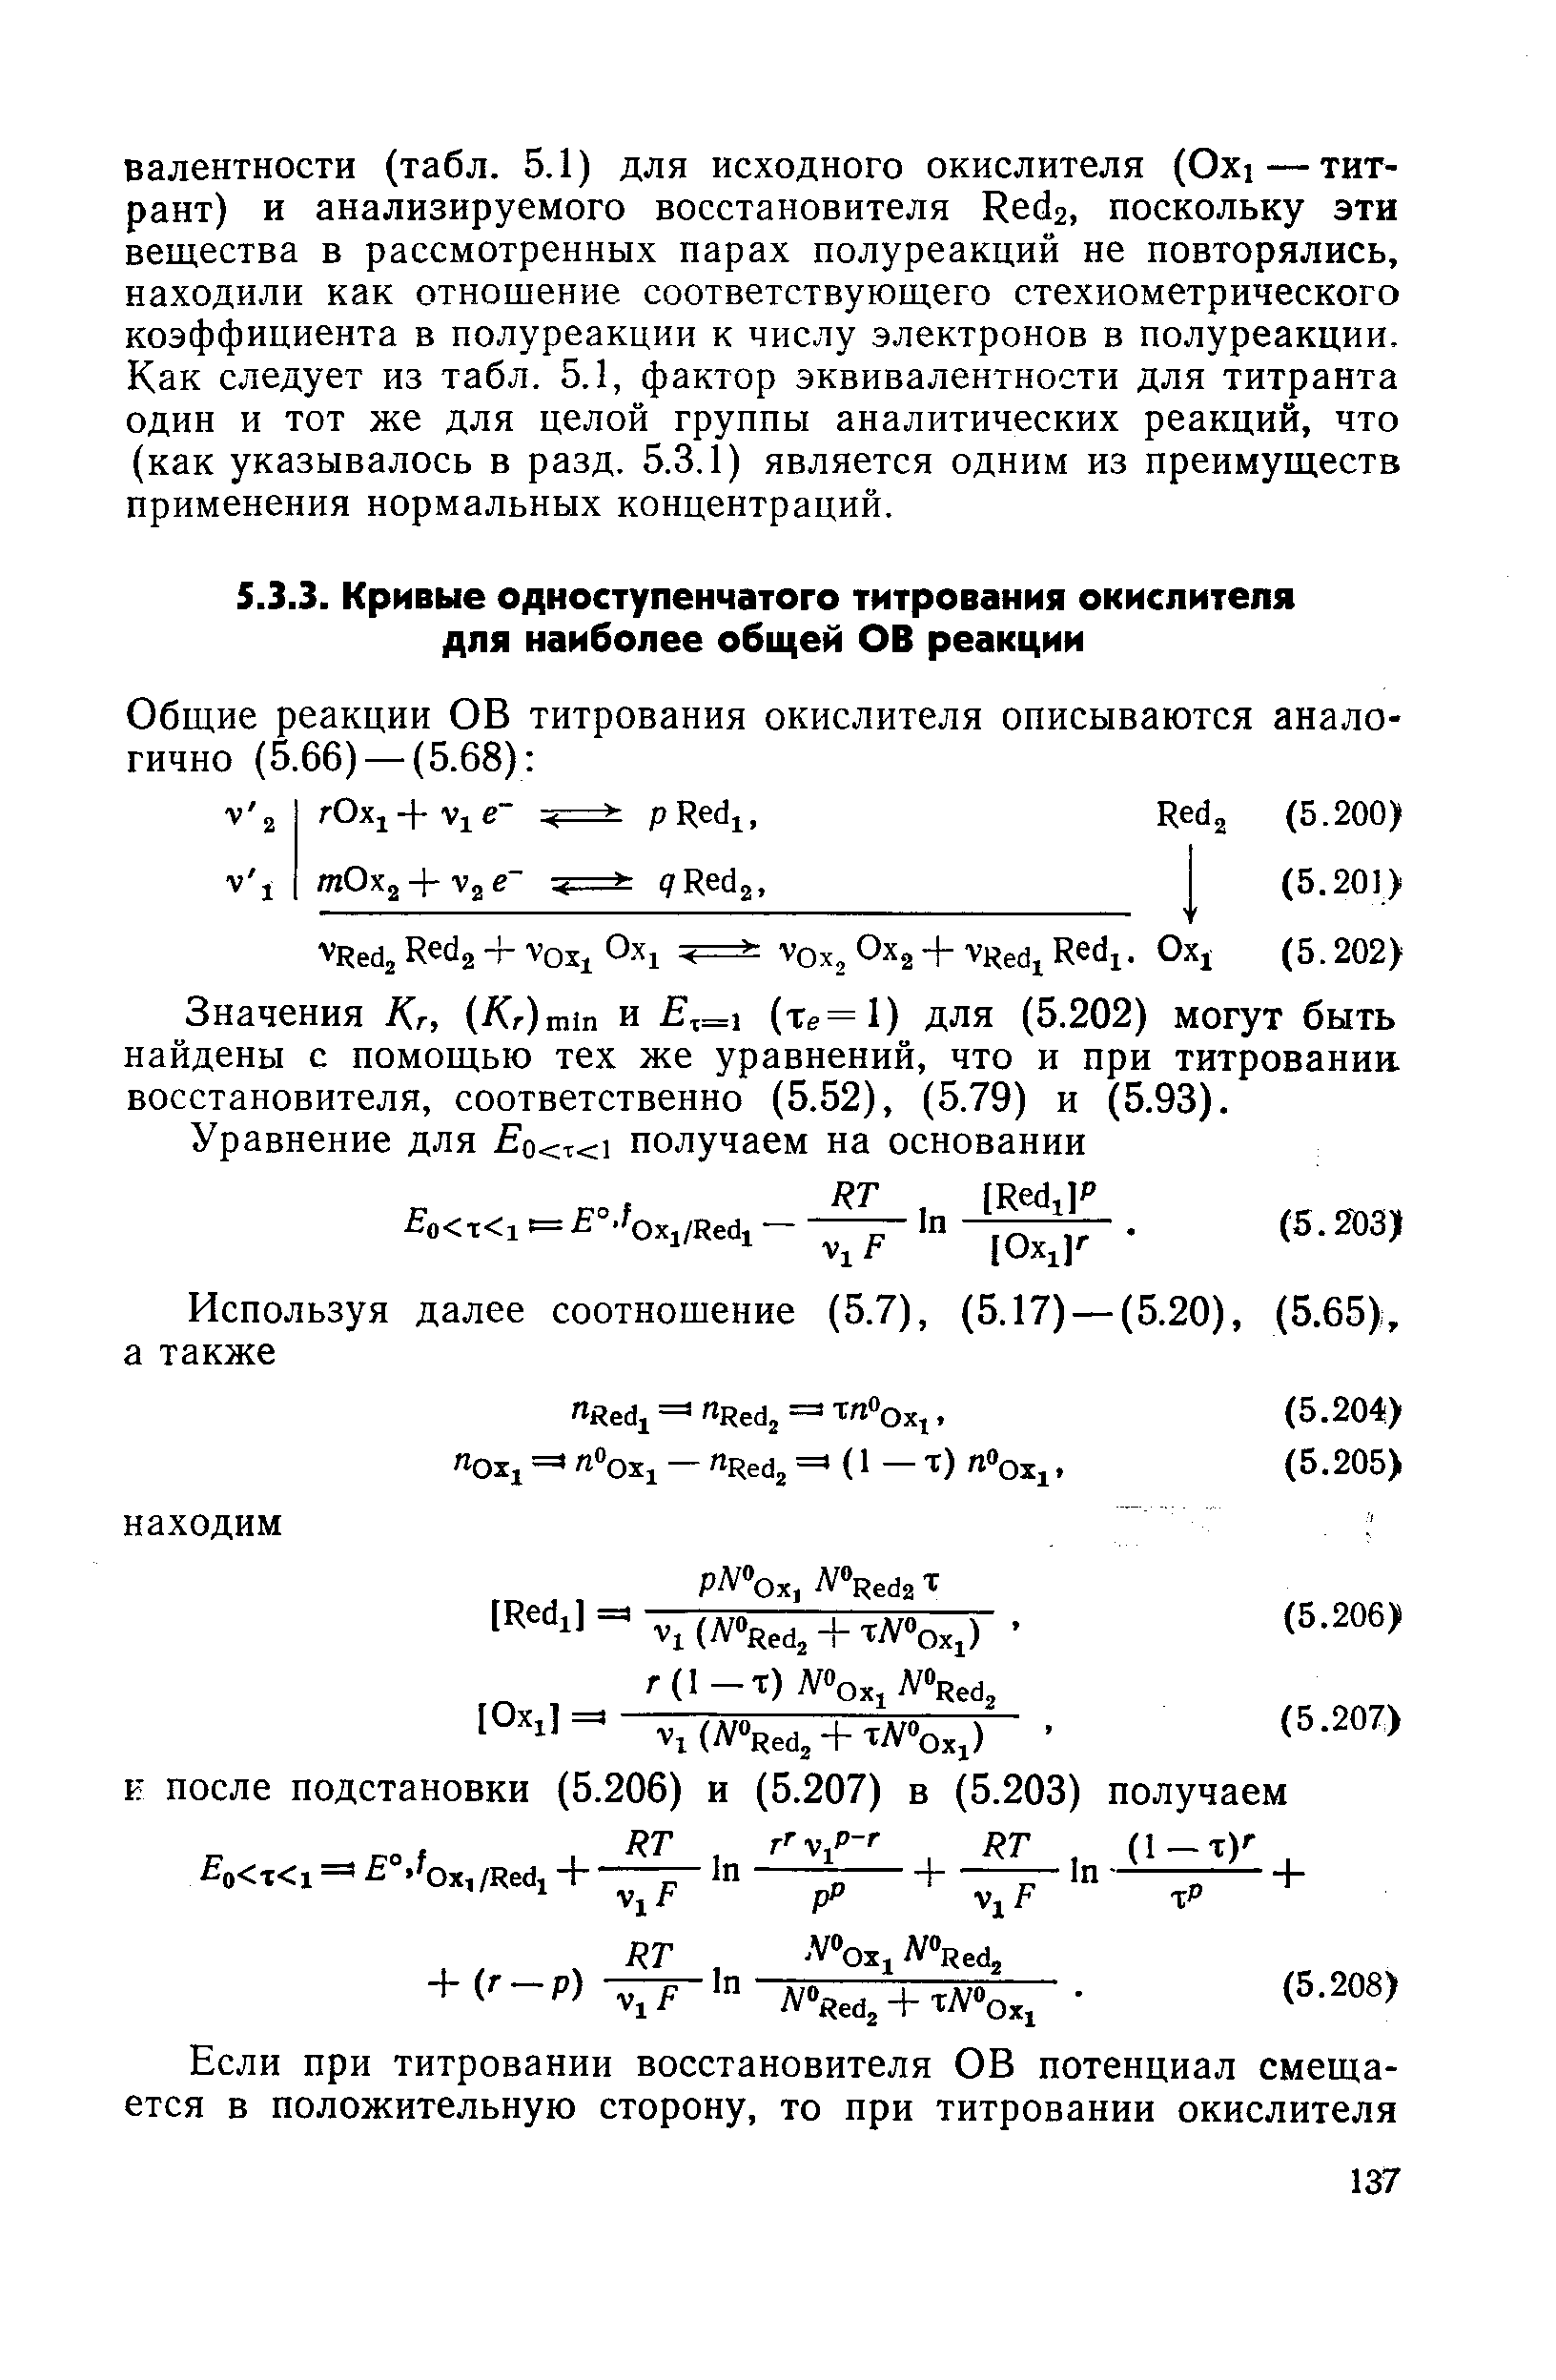 Значения Kr, (Д /-)тШ и ,=1 (Те=1) для (5.202) могут быть найдены с помощью тех же уравнений, что и при титровании, восстановителя, соответственно (5.52), (5.79) и (5.93).